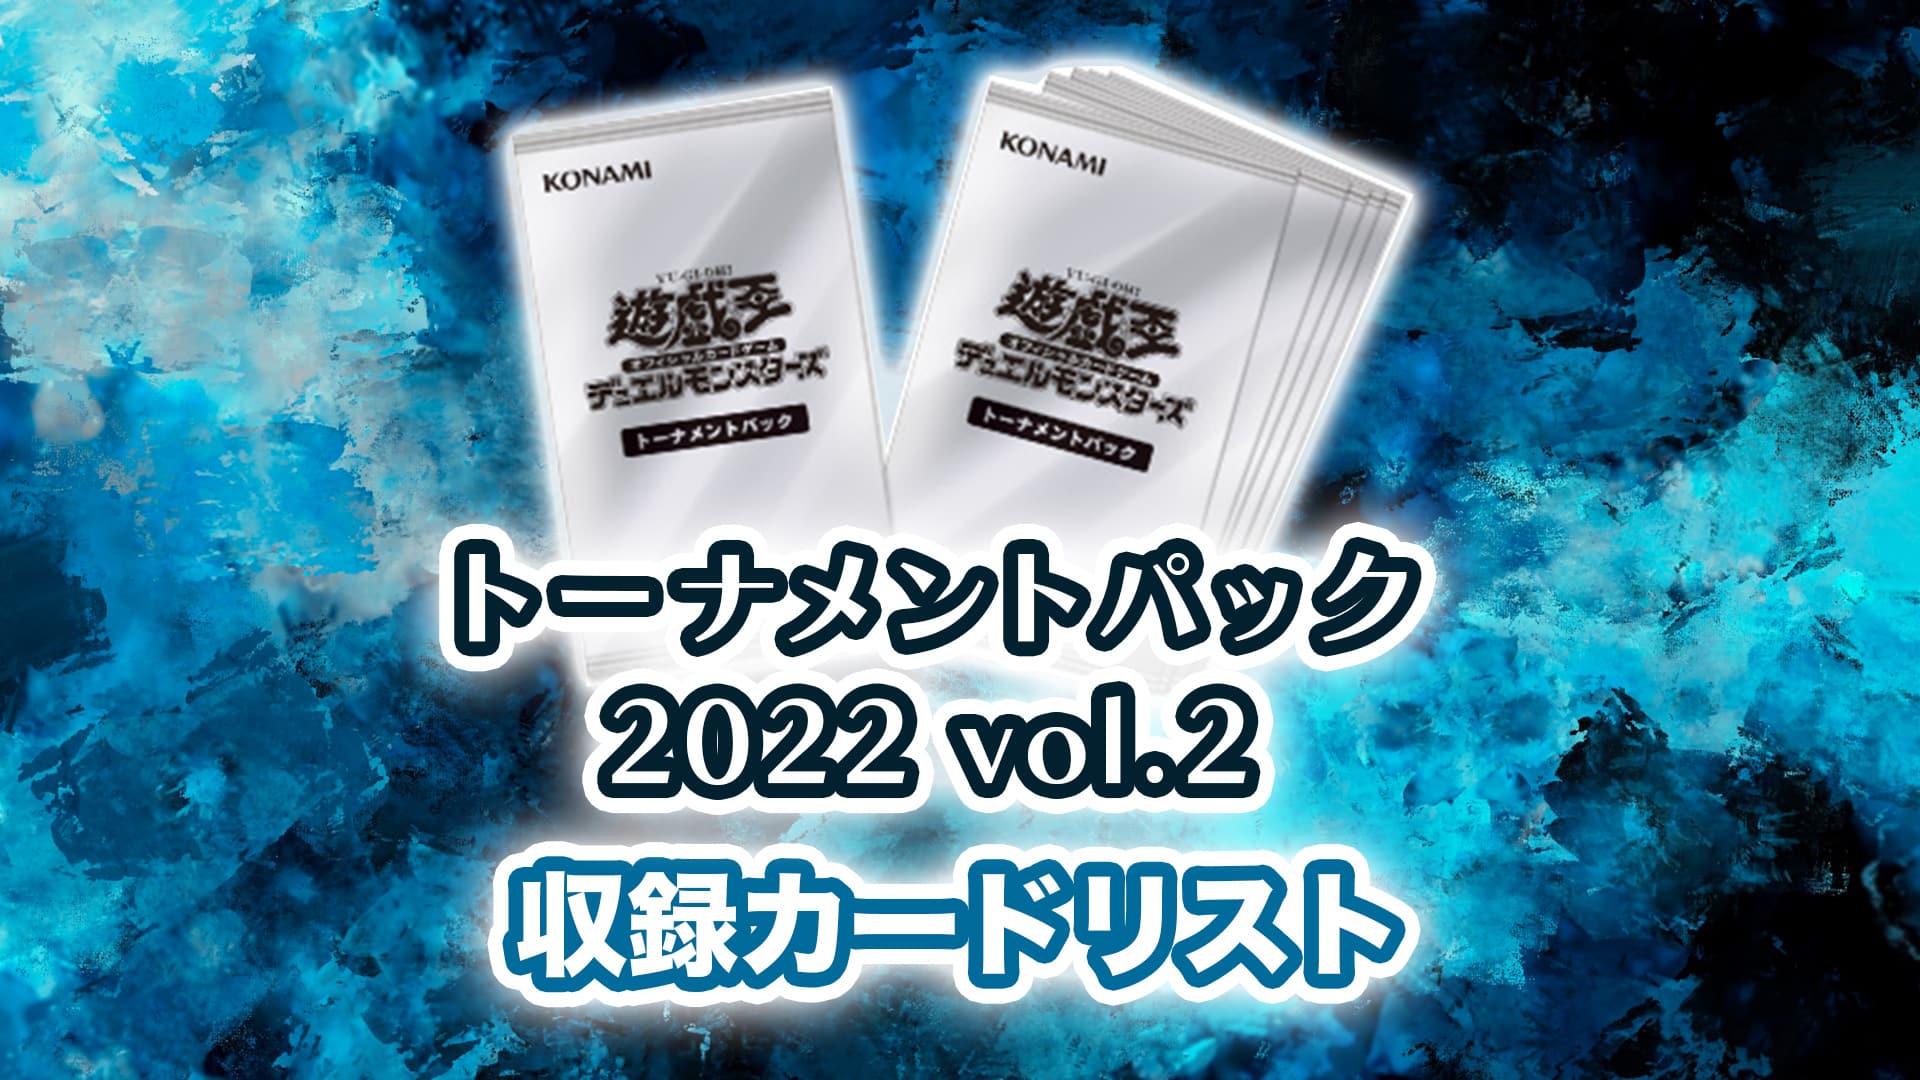 収録内容】『トーナメントパック2022 vol.2』収録カードリスト【遊戯王 